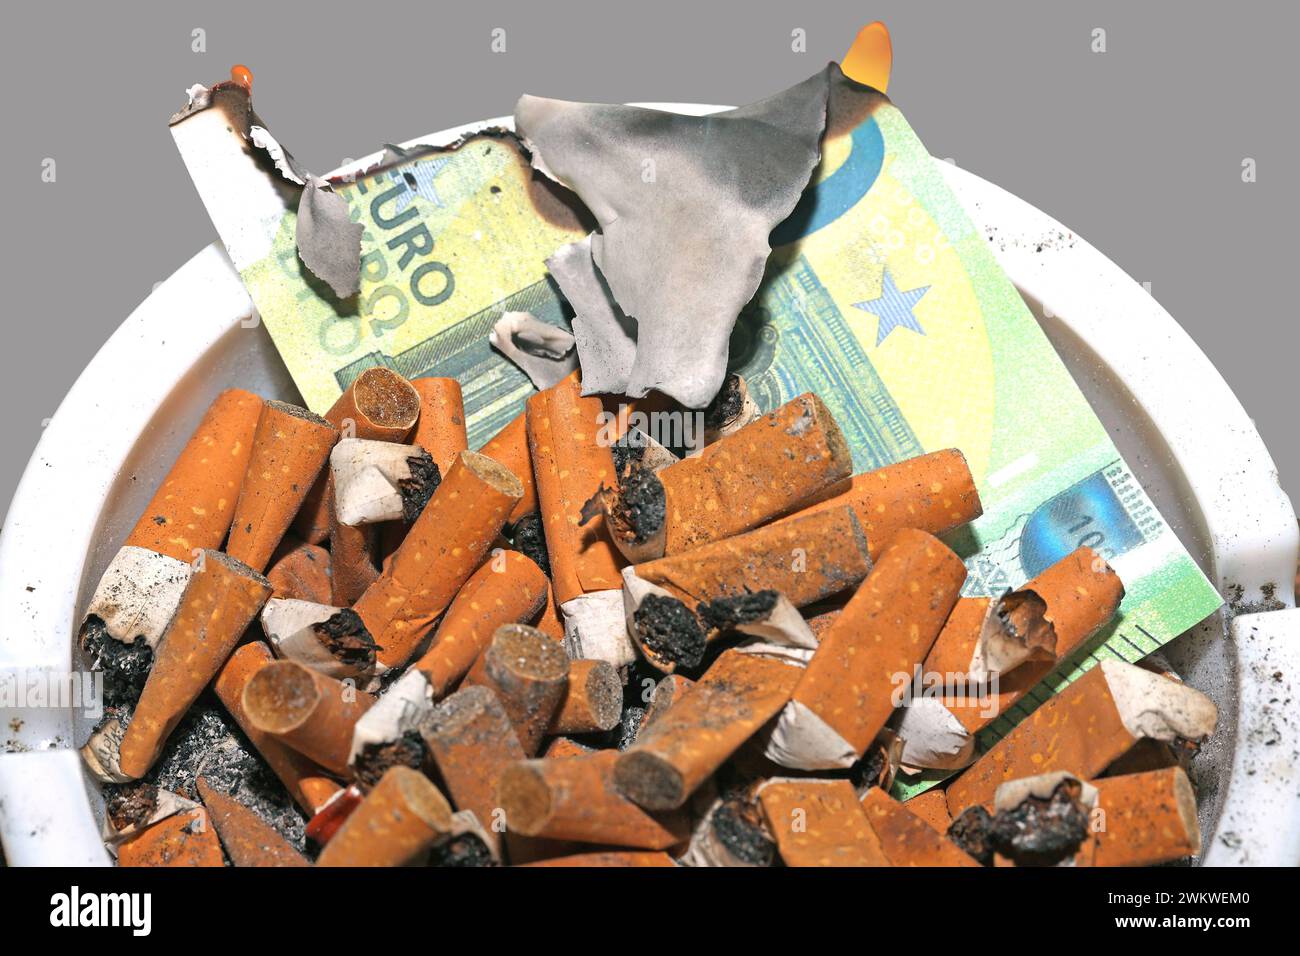 Gesundheit und Geld zu Asche verbrannt Zigarettenkippen in Großer Zahl und deren Asche *** santé et argent brûlés en cendres un grand nombre de mégots de cigarettes et leurs cendres Banque D'Images